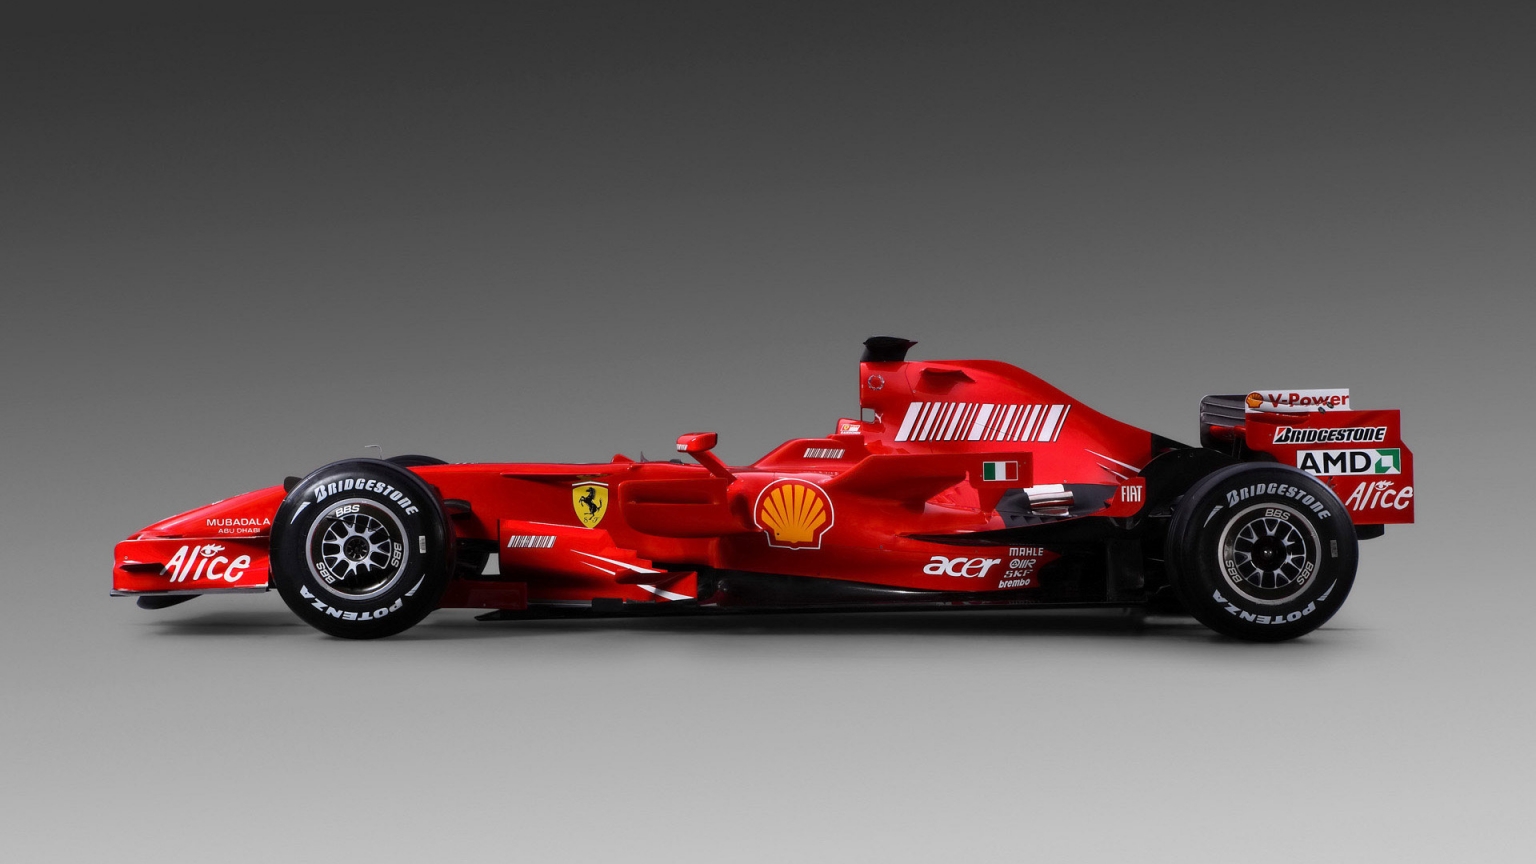 Formula 1 Ferrari Sport for 1536 x 864 HDTV resolution